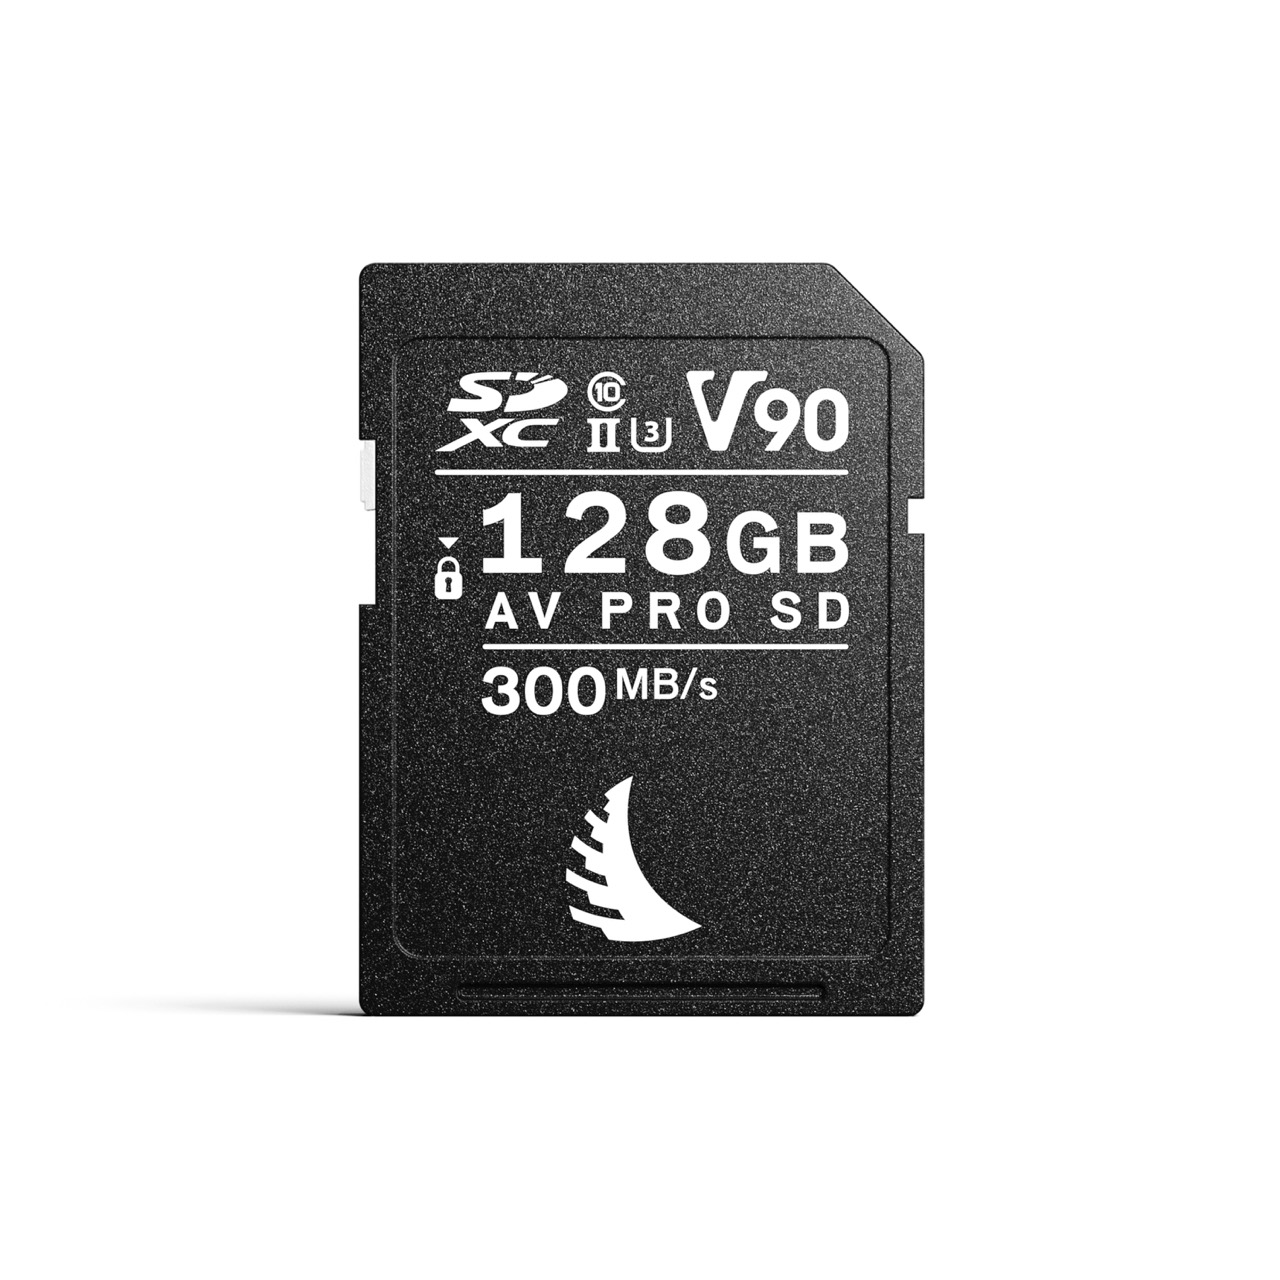 AV PRO SD V90 MK2 128 GB